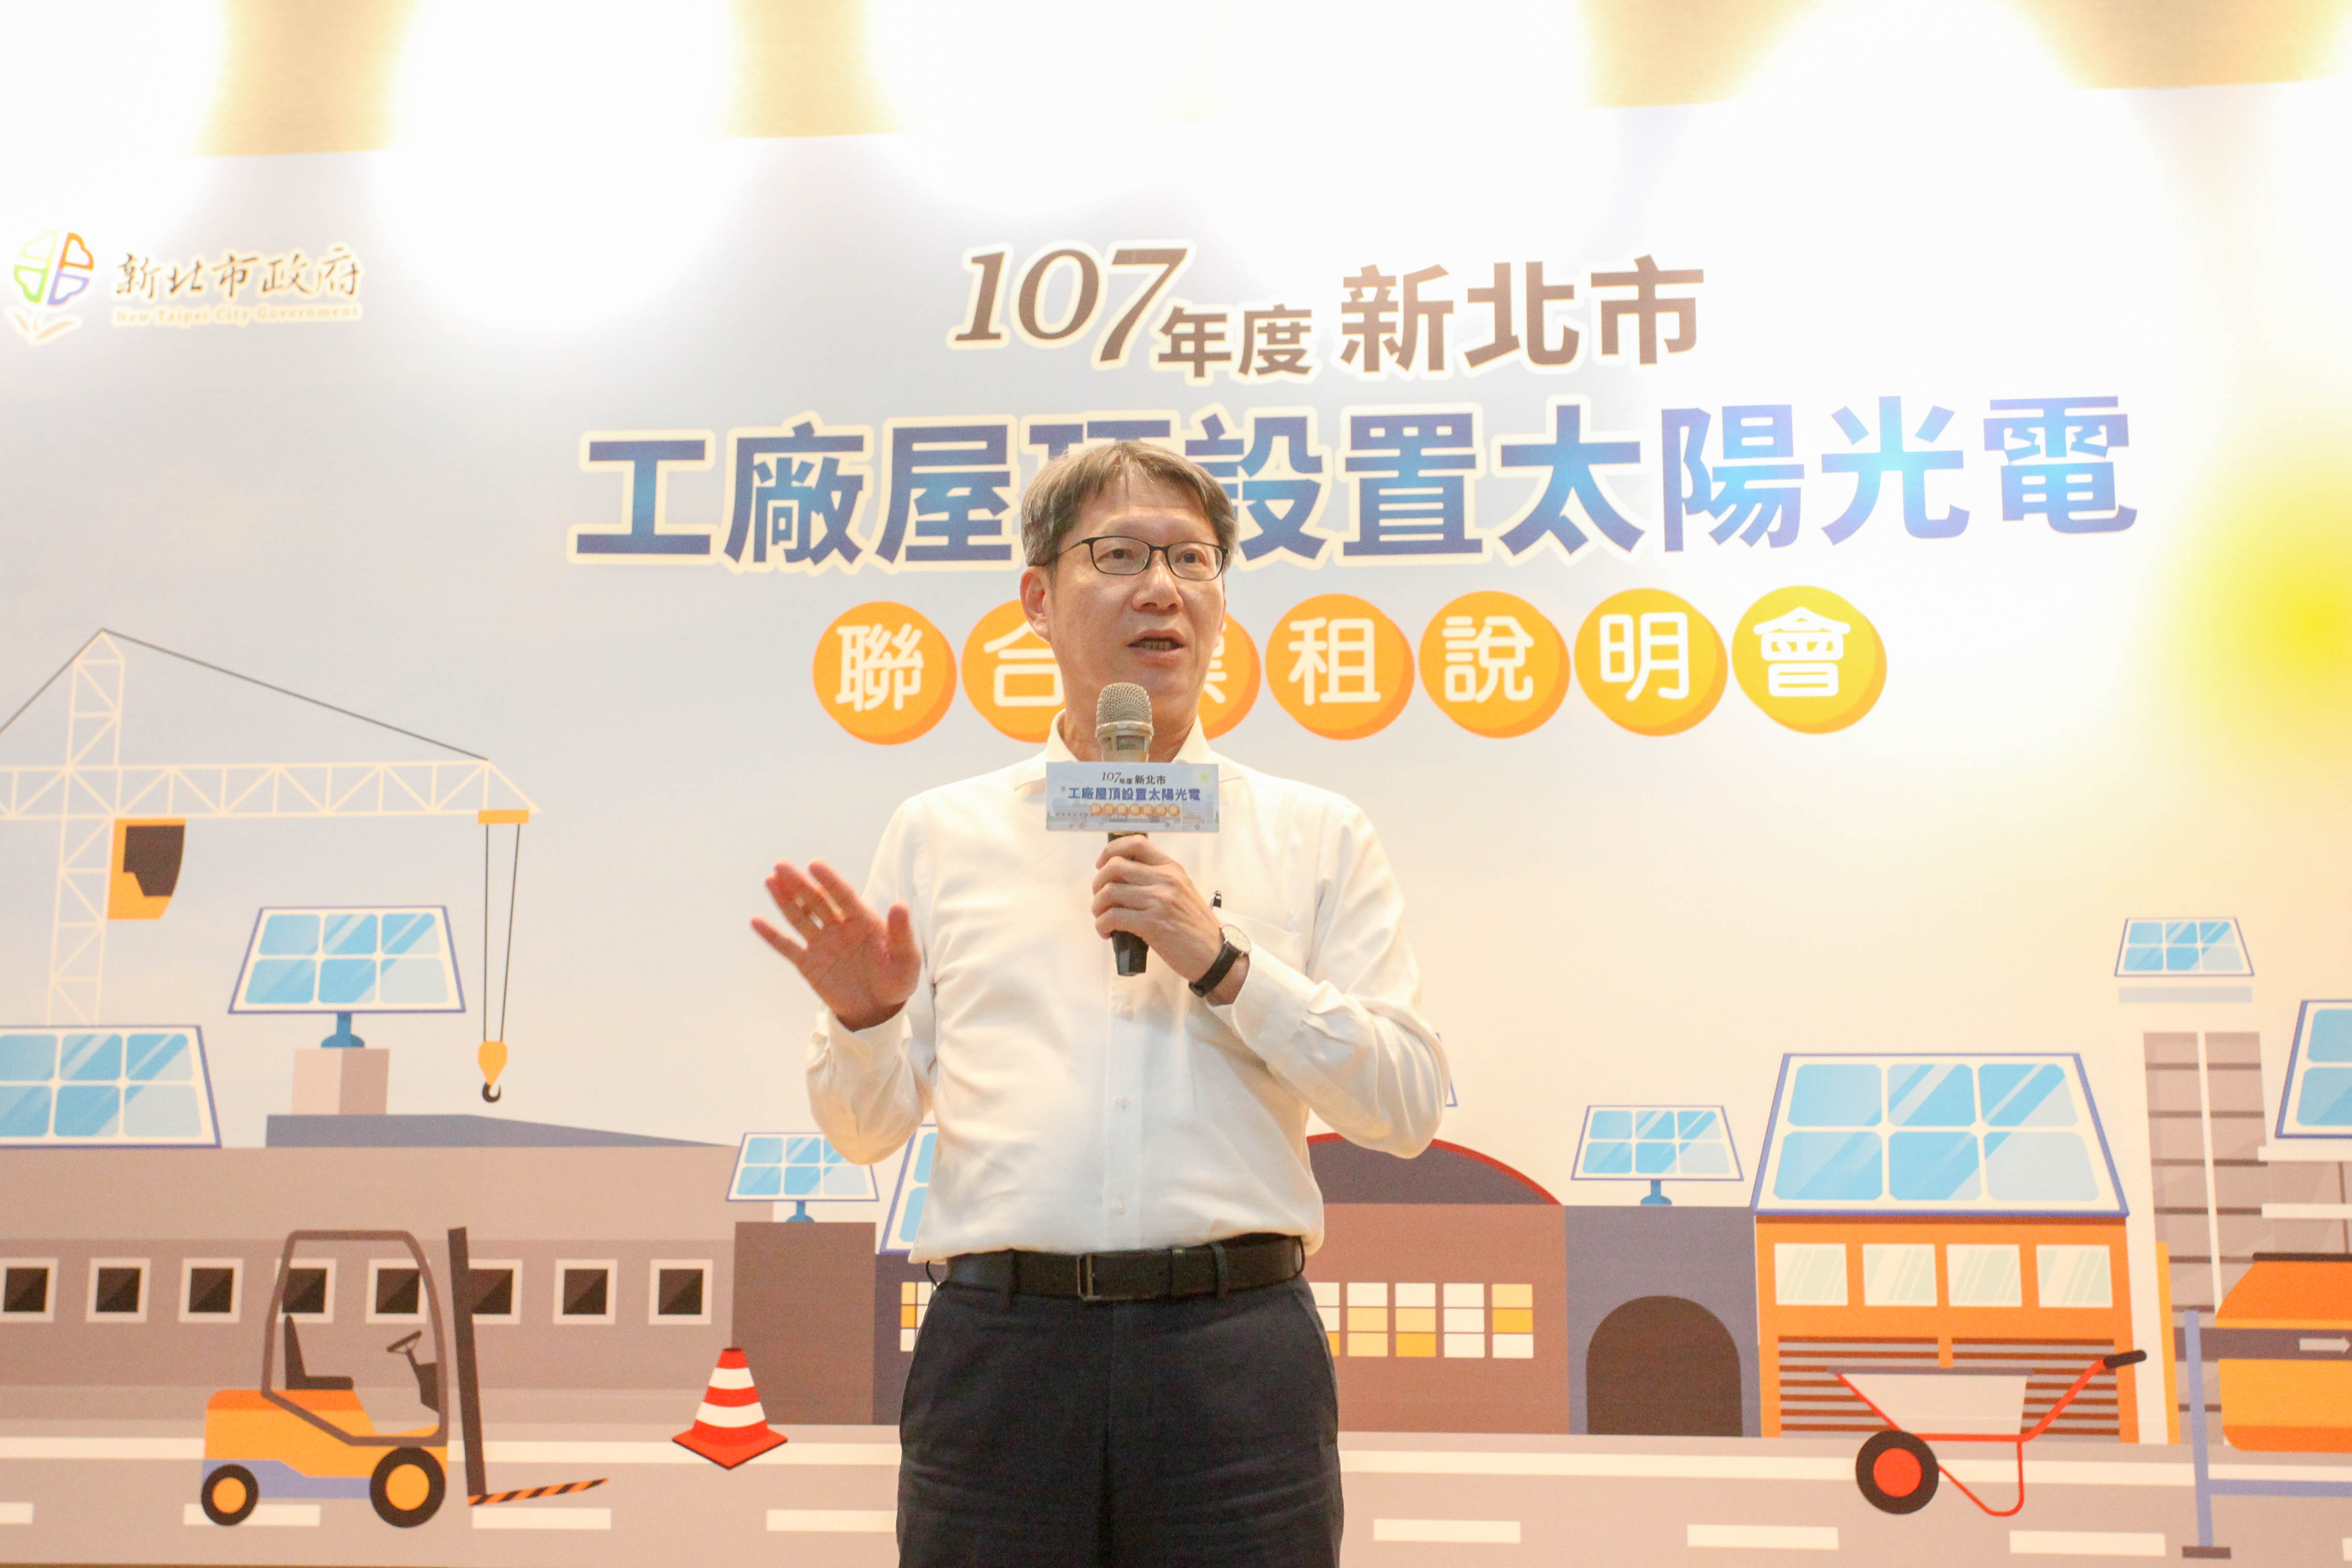 新北市副市長葉惠青出席「新北市工廠屋頂設置太陽光電聯合標租說明會」並致詞